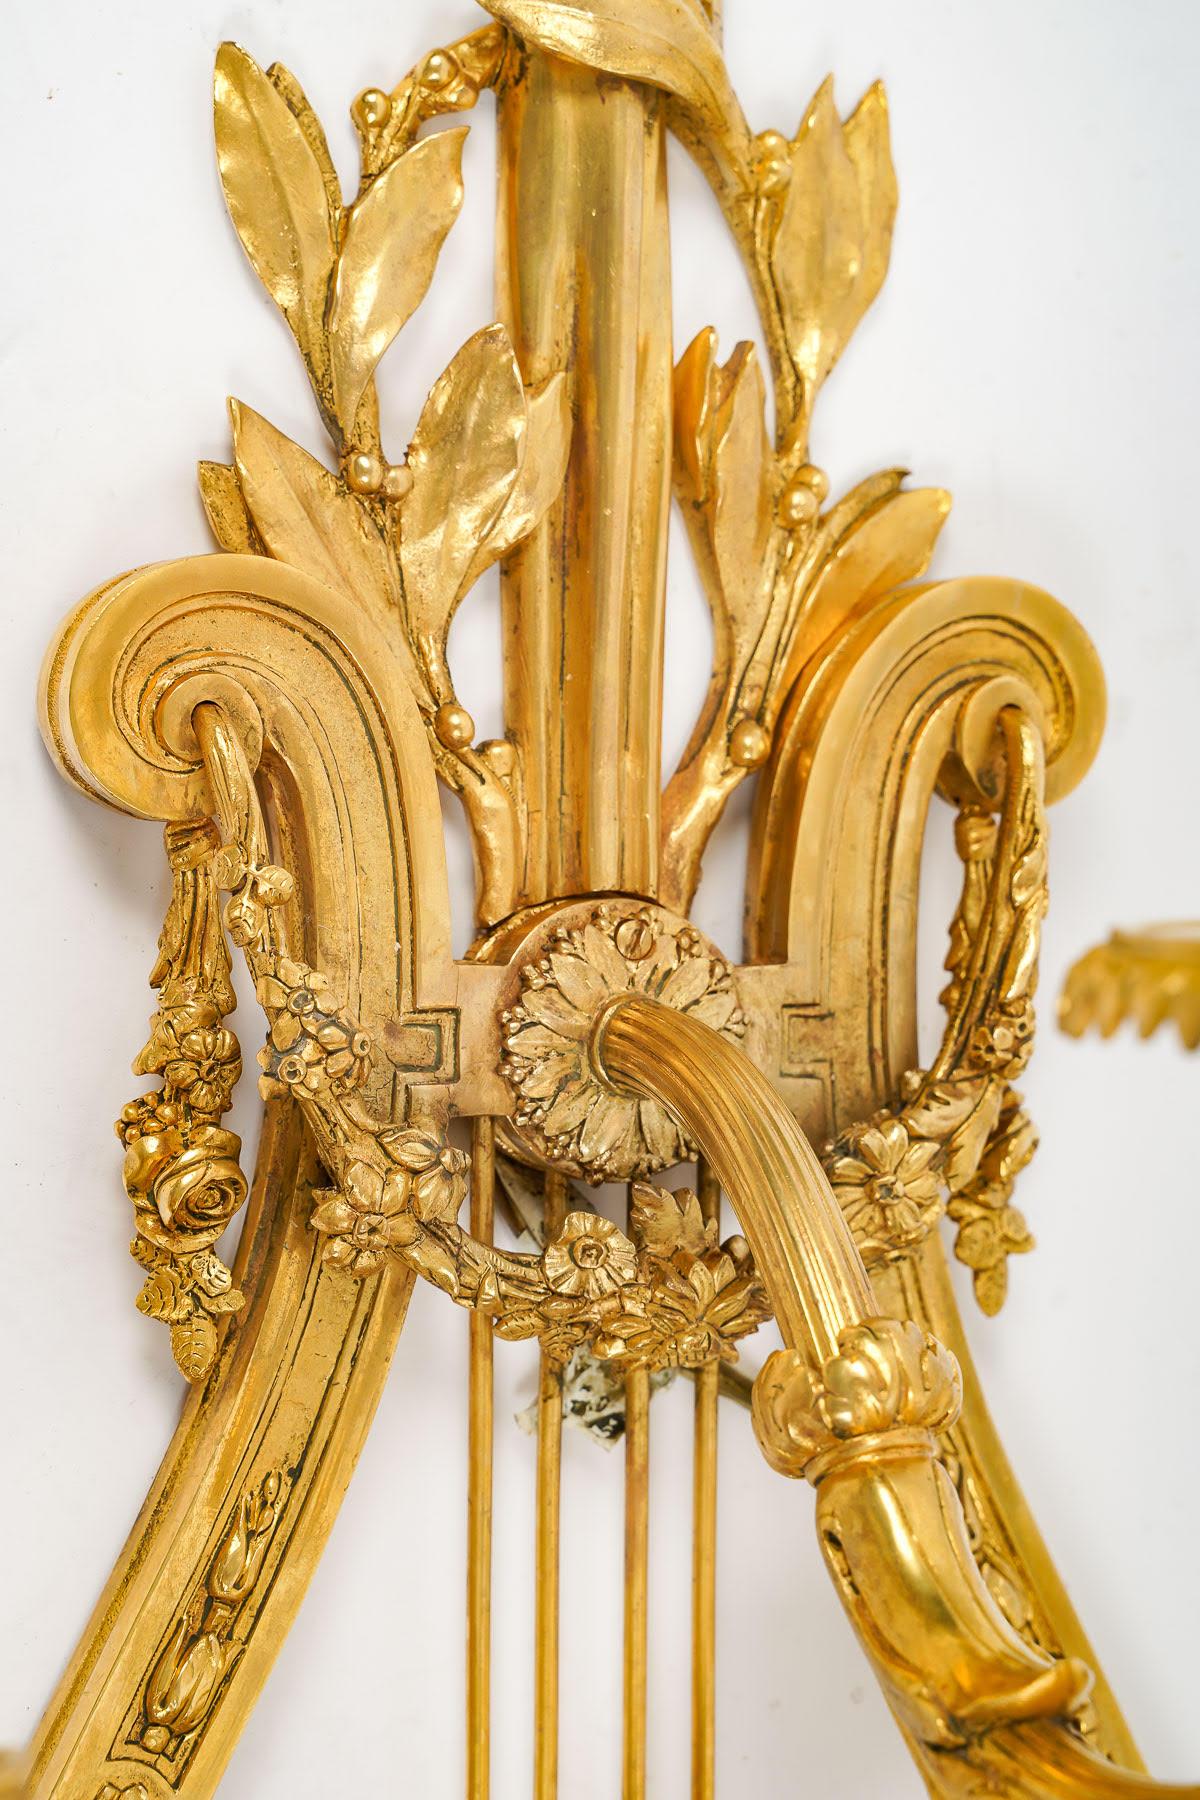 Großes Paar getriebener und vergoldeter Bronze-Wandleuchter aus dem 19.

Paar vergoldete und ziselierte Bronzeleuchten aus dem 19. Jahrhundert, Periode Napoleon III.
h: 104cm, B: 39cm, T: 26cm